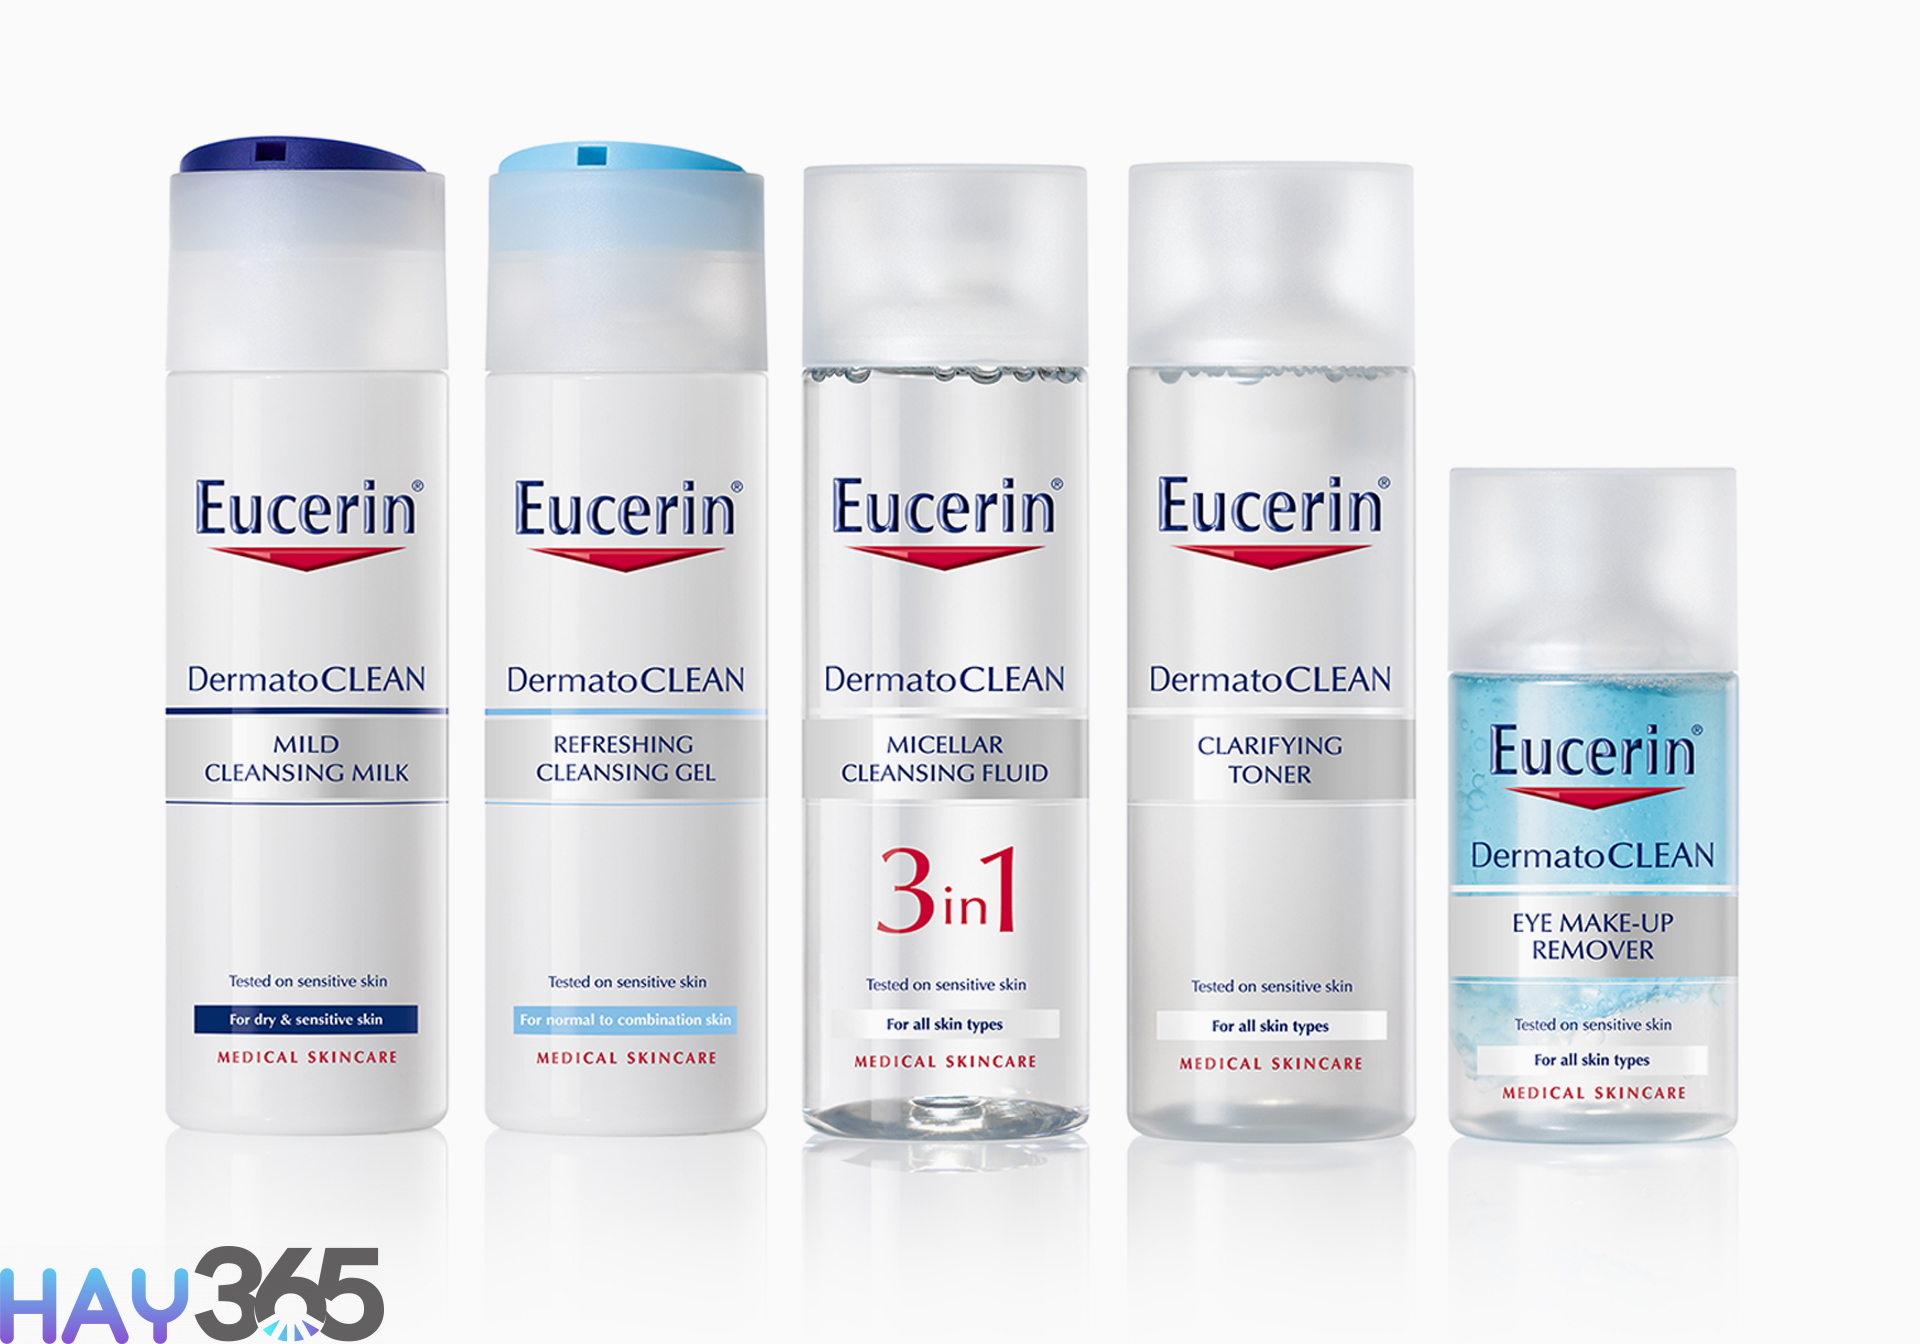 Sữa rửa mặt Eucerin dịu nhẹ, làm sạch sâu và cải thiện các vấn đề da đang gặp phải